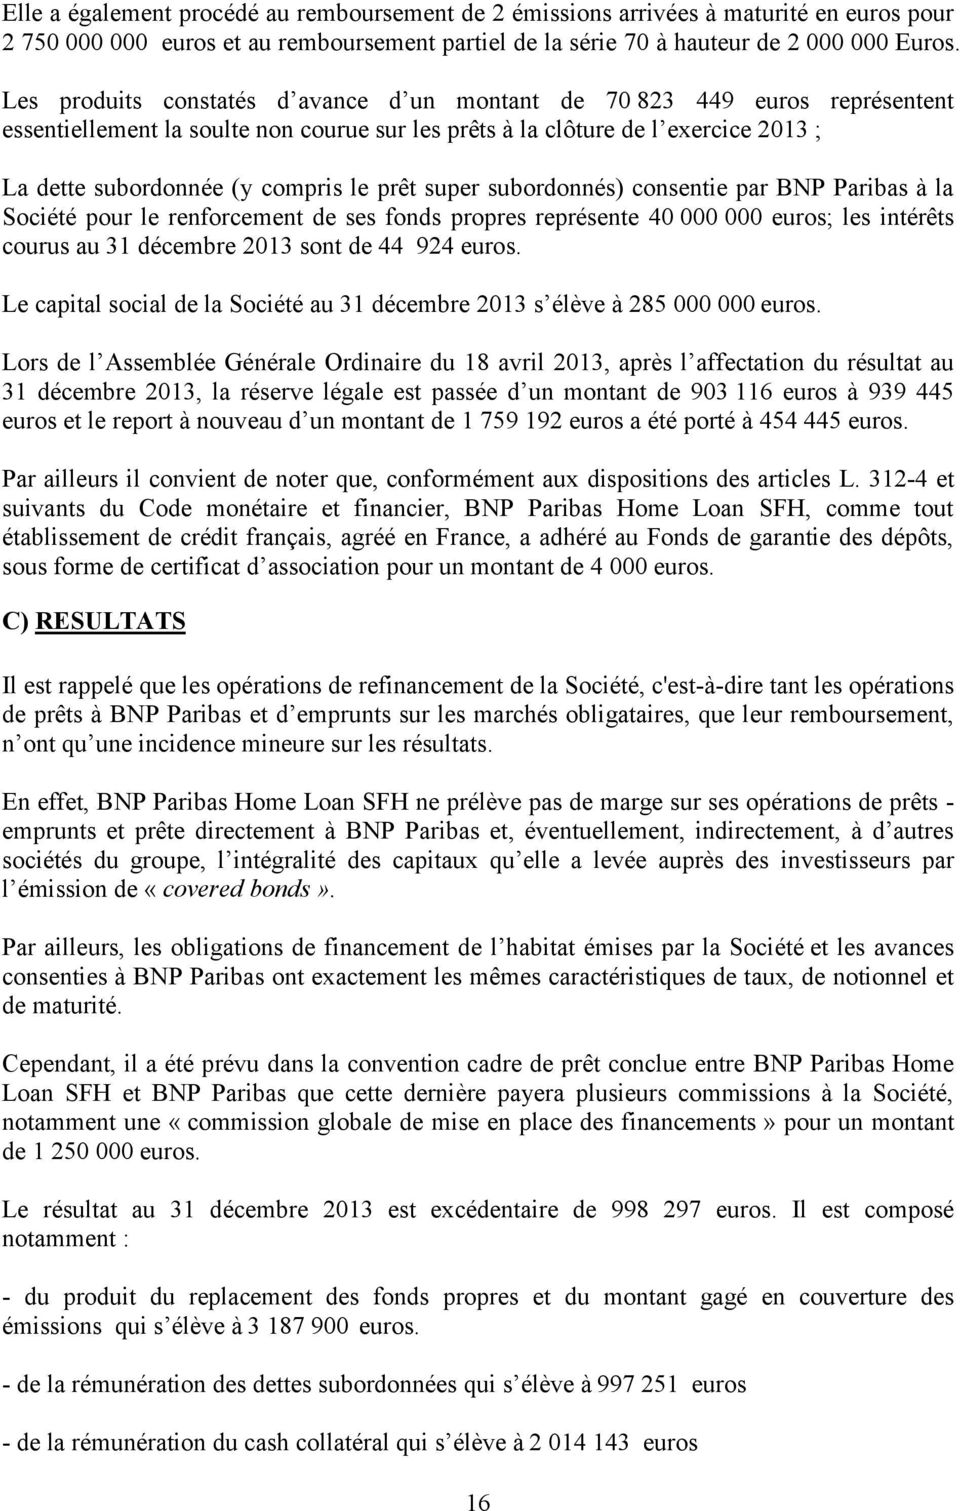 prêt super subordonnés) consentie par BNP Paribas à la Société pour le renforcement de ses fonds propres représente 40 000 000 euros; les intérêts courus au 31 décembre 2013 sont de 44 924 euros.